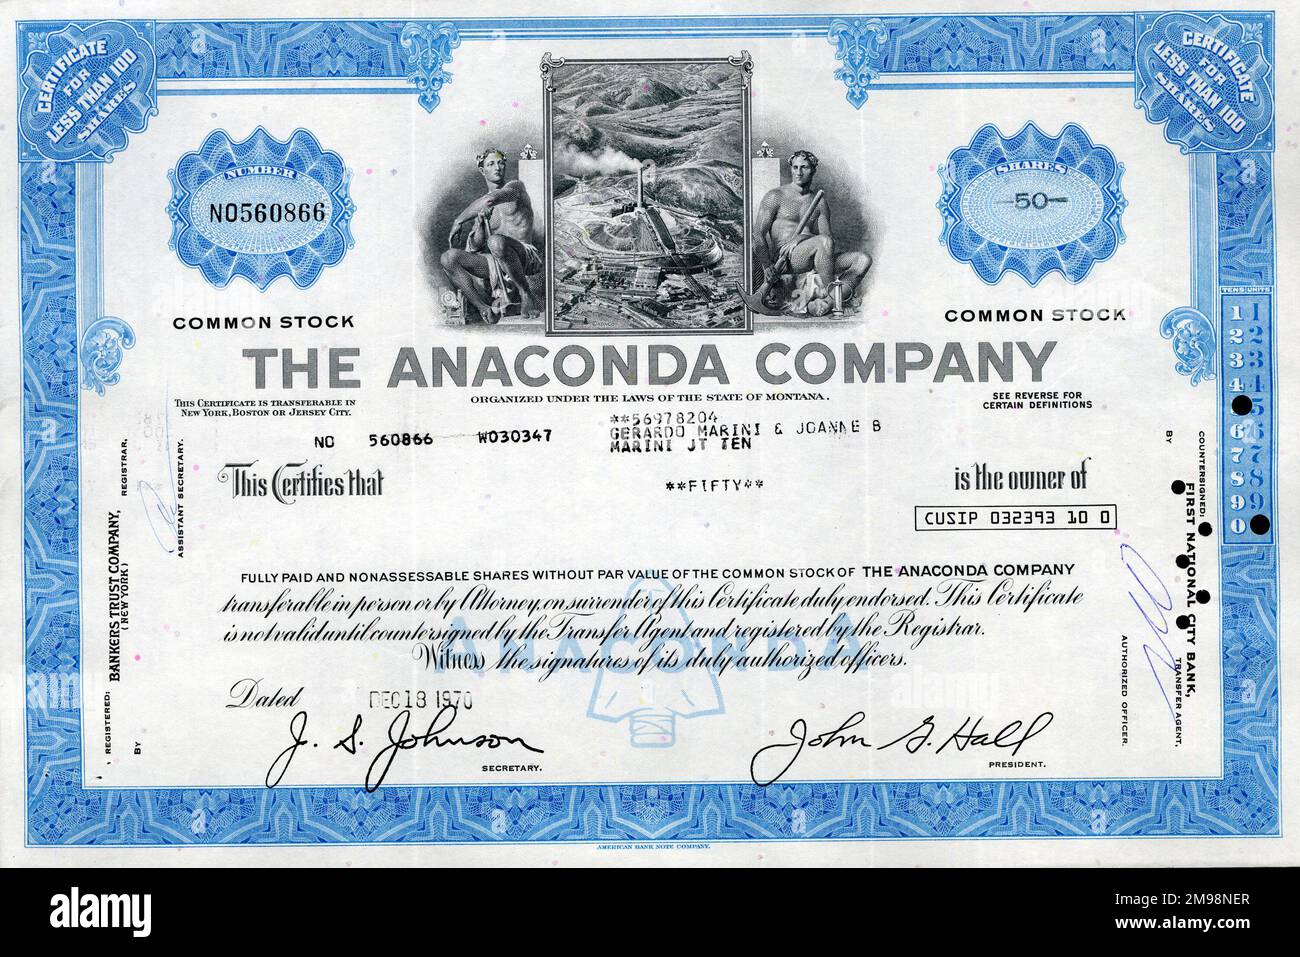 Stock Share Certificate - The Anaconda Company, 50 shares. Stock Photo